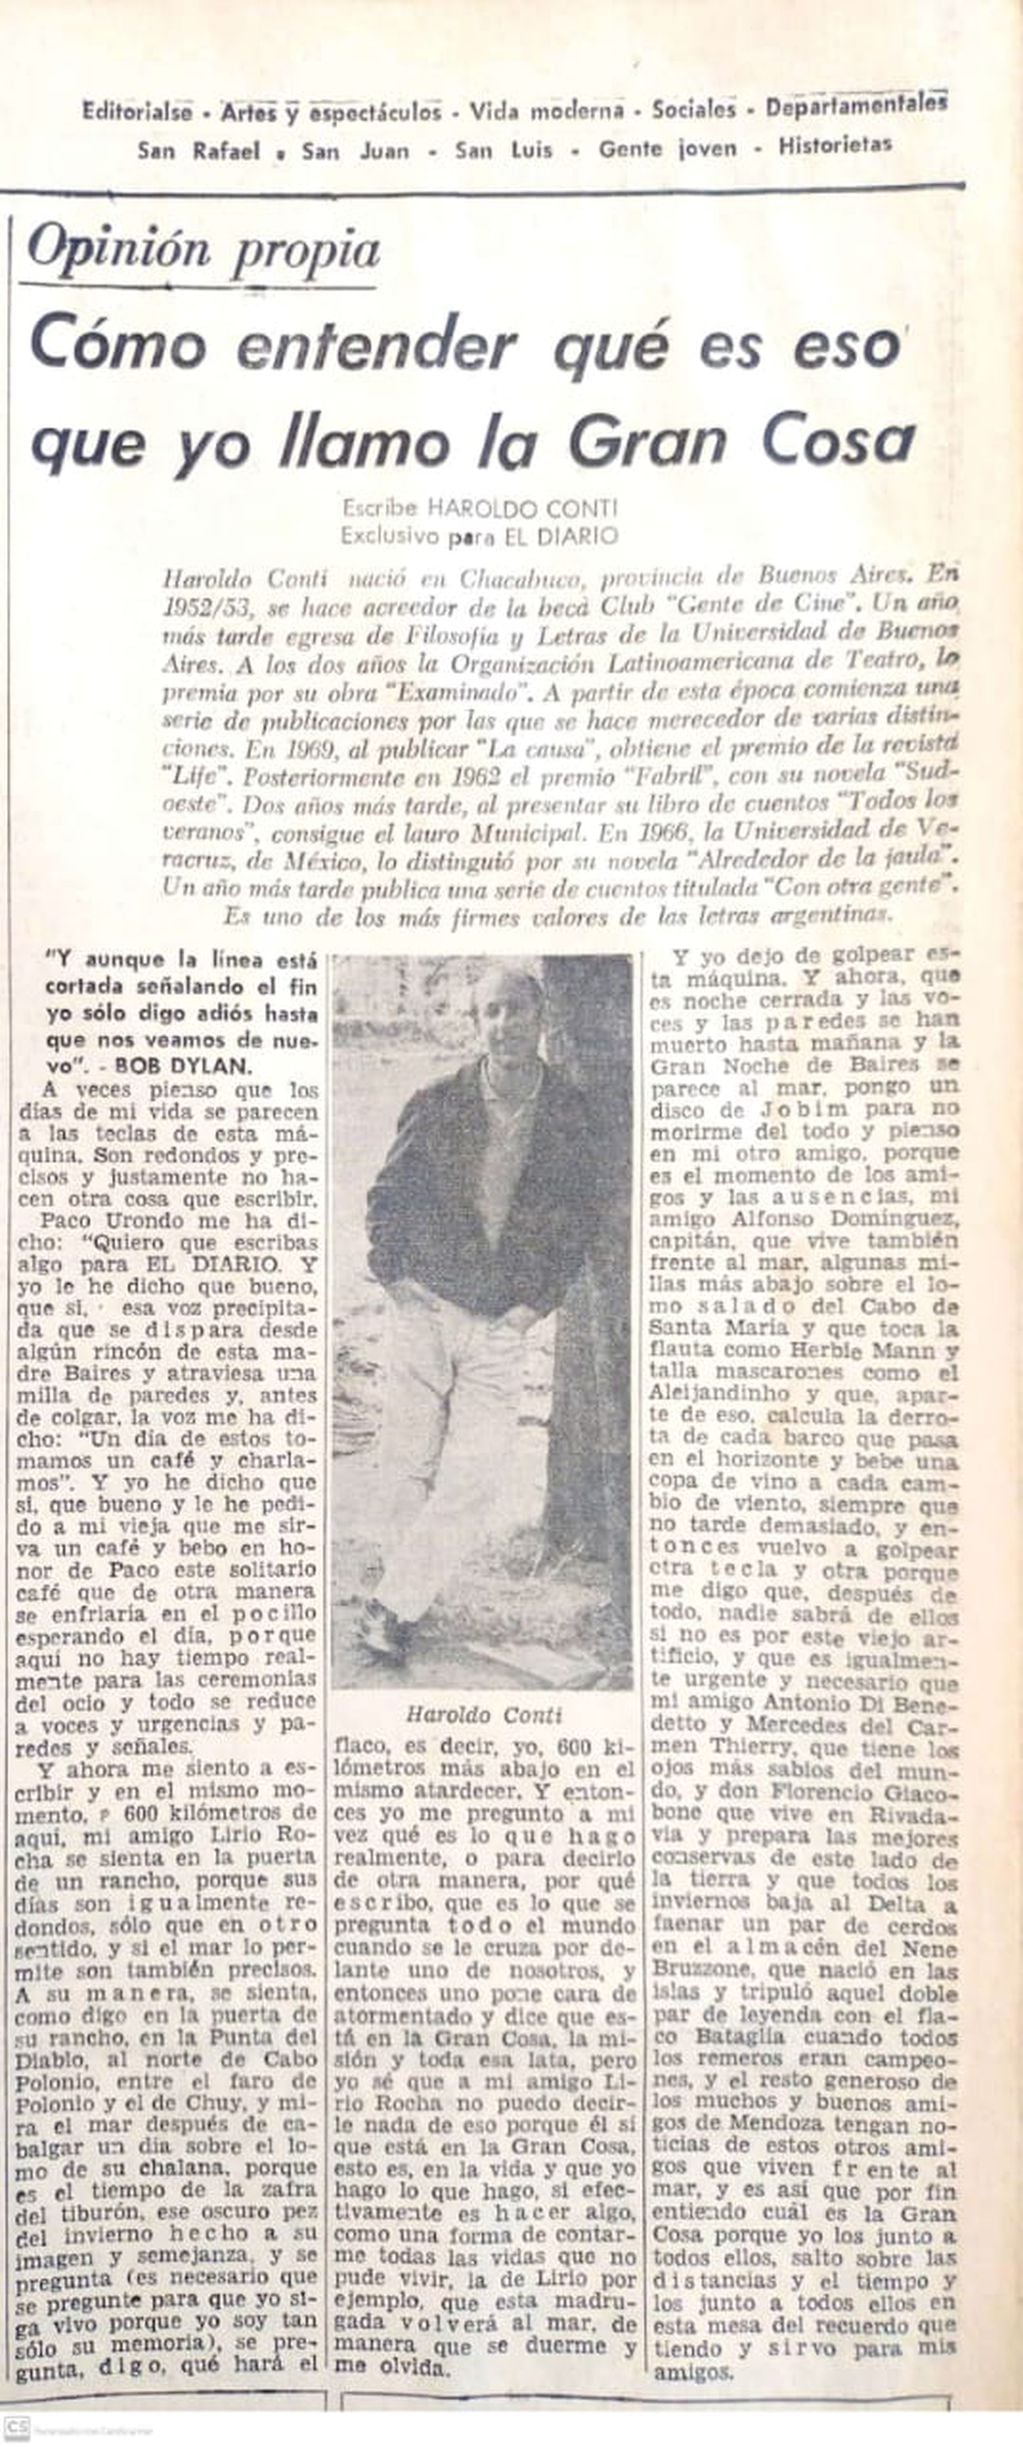 Publicación original de "Los caminos" en El Diario, de Mendoza (30/09/1969).